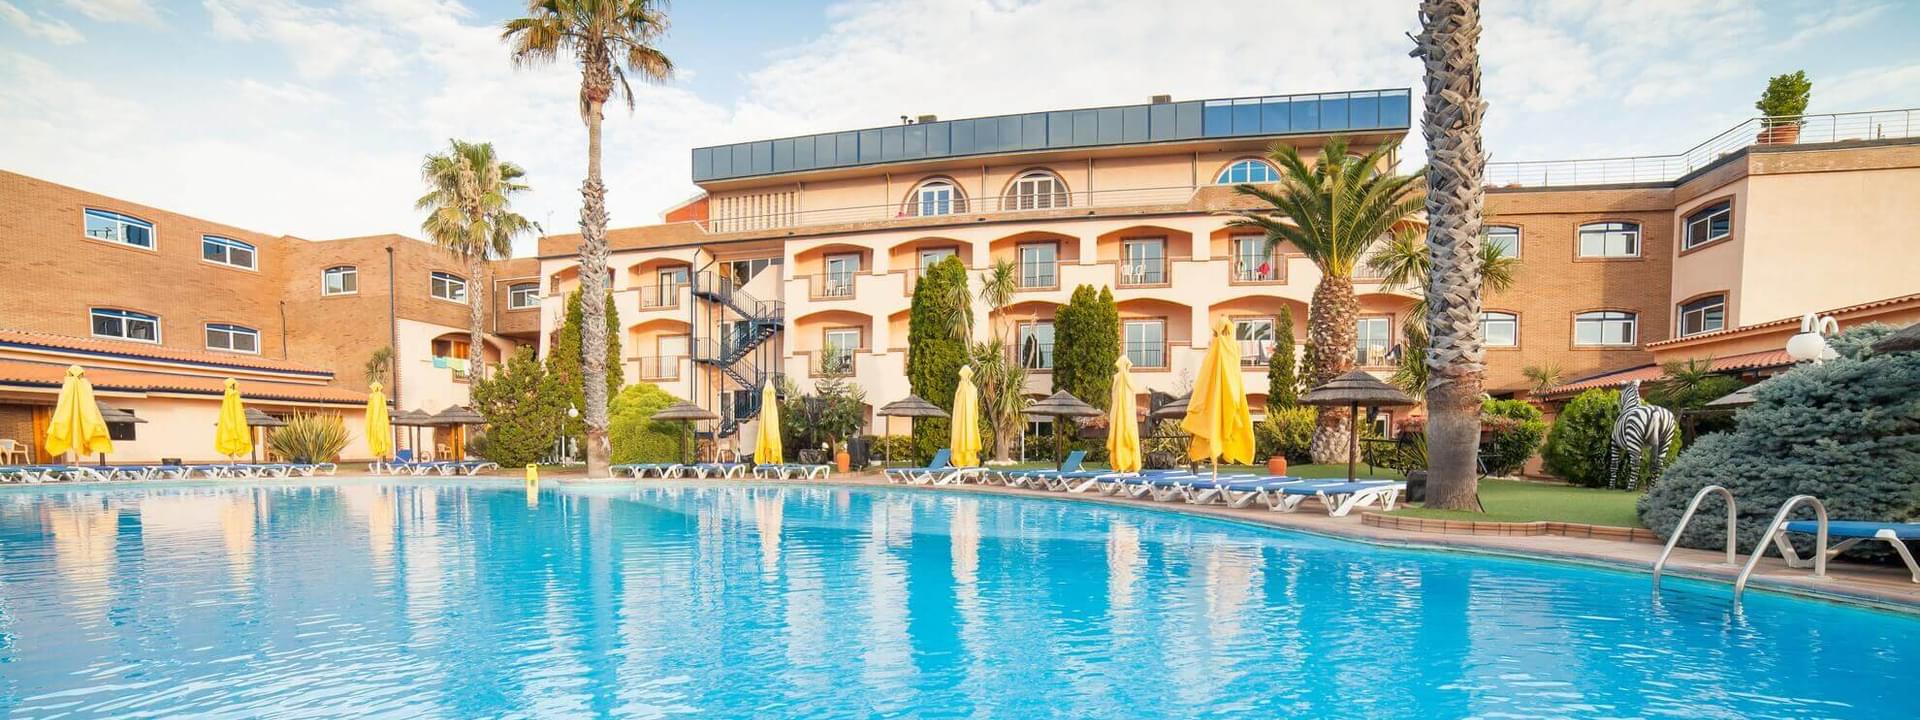 Hotel Resort "O Alambique de Ouro"